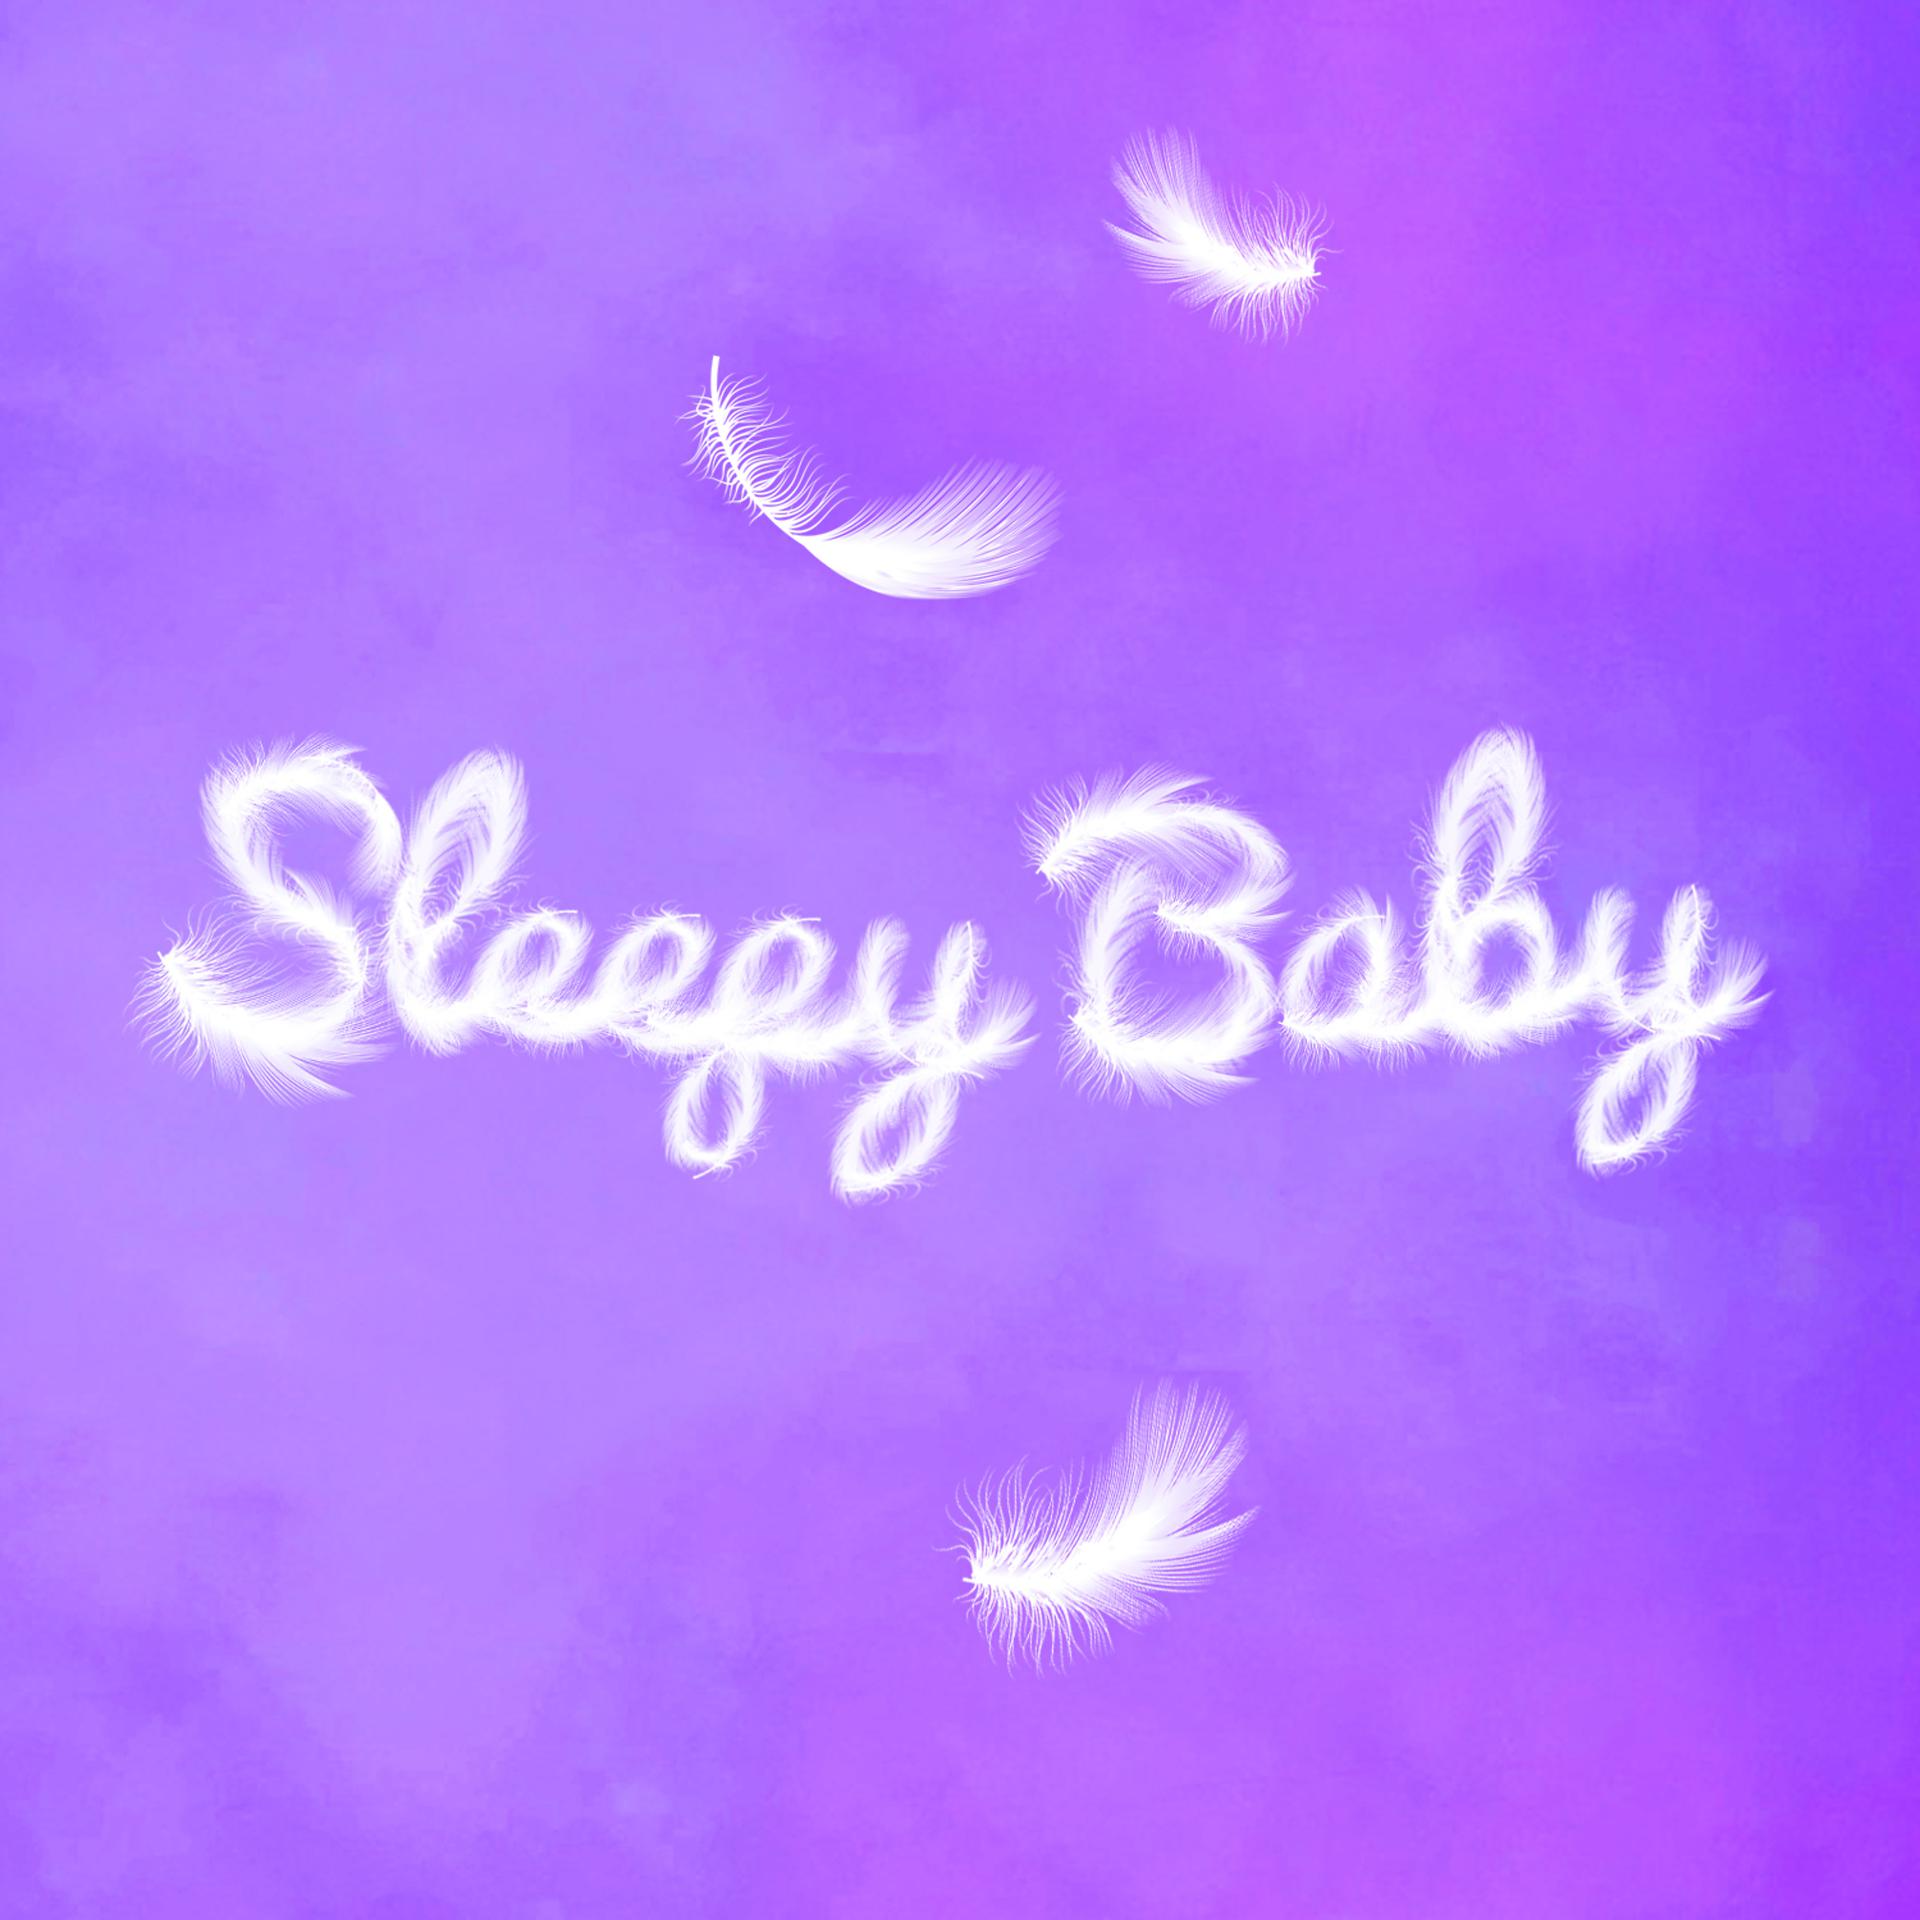 Постер альбома Sleepy Baby